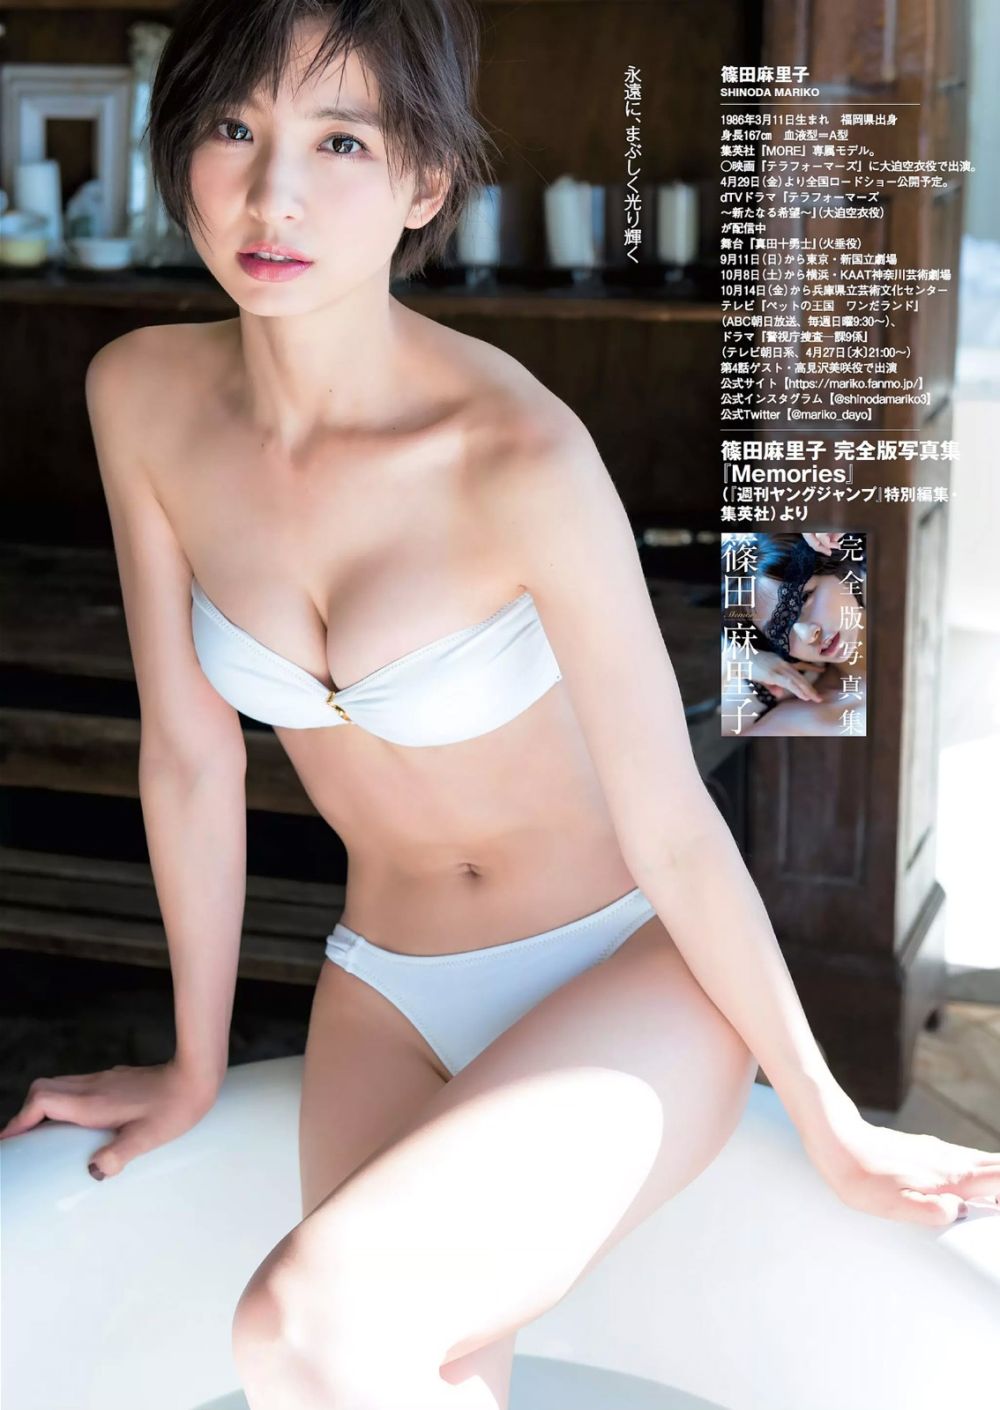 Mariko Shinoda Sexy and Hottest Photos , Latest Pics